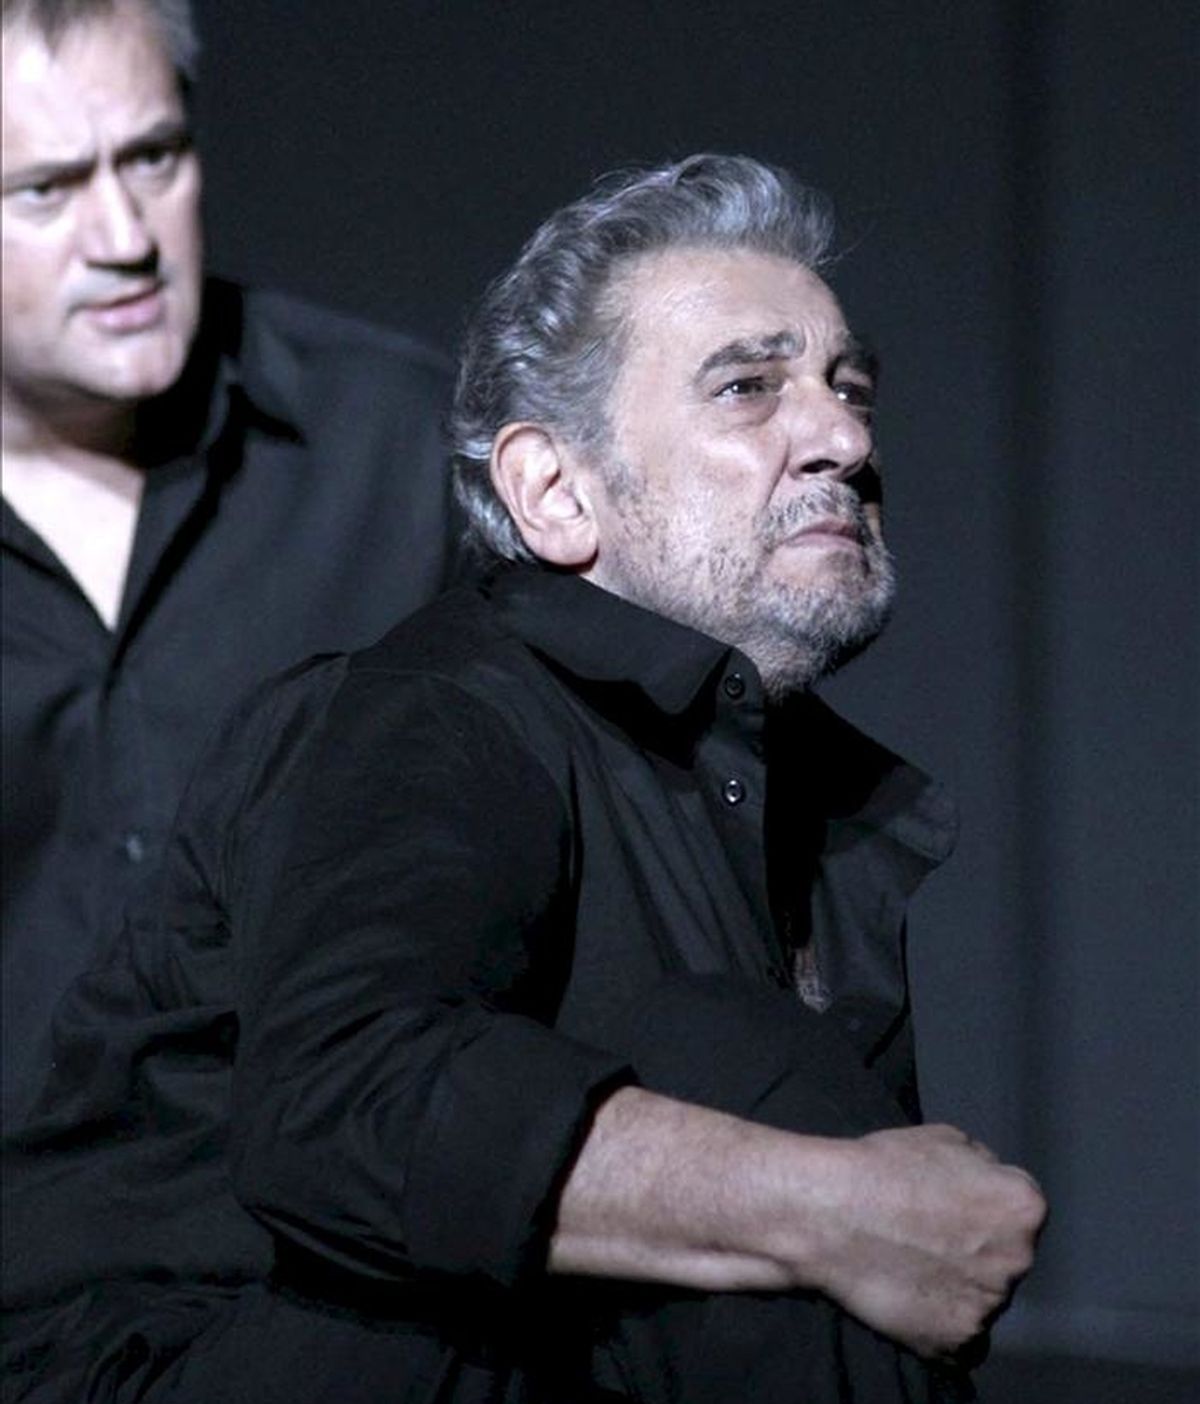 Fotografía facilitada por el Teatro Real de los tenores Plácido Domingo (d), en el papel de Oreste, y Paul Groves (i), interpretando a Pylade, durante el pase gráfico de la ópera de Gluck "Iphigénie en Tauride". EFE